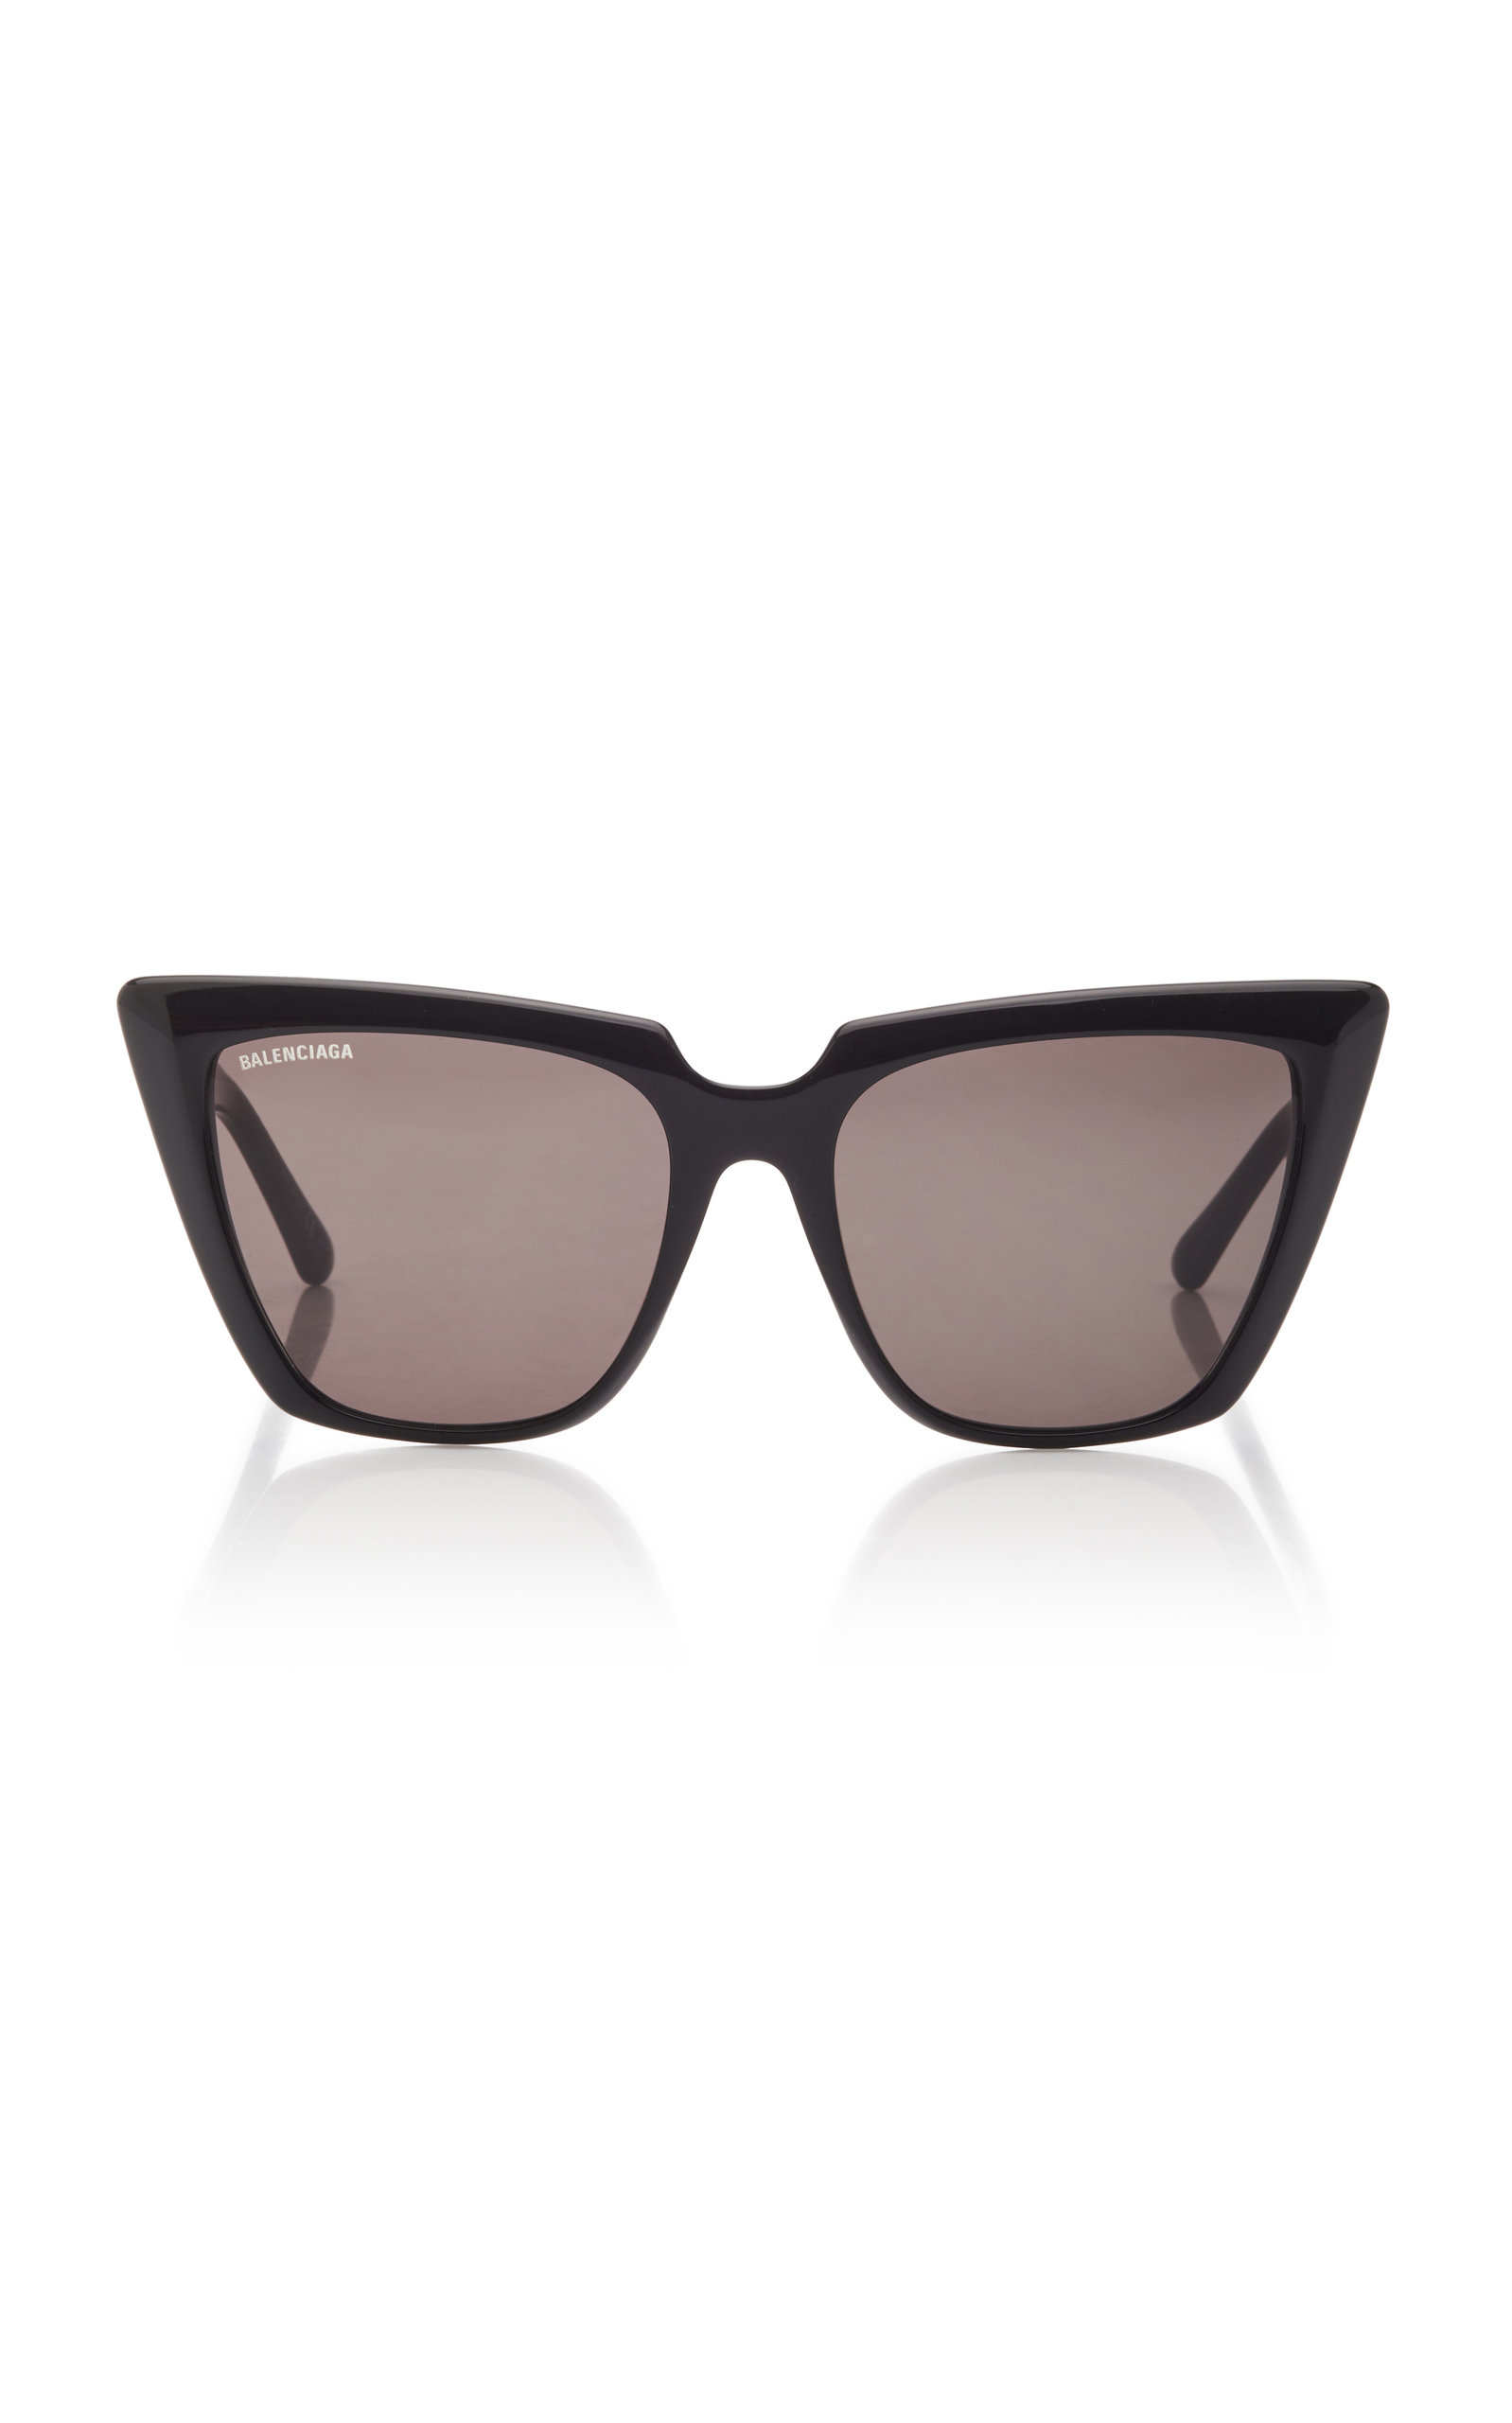 Balenciaga - Women's Tortoiseshell Acetate Square-Frame Sunglasses - Black - OS - Moda Operandi